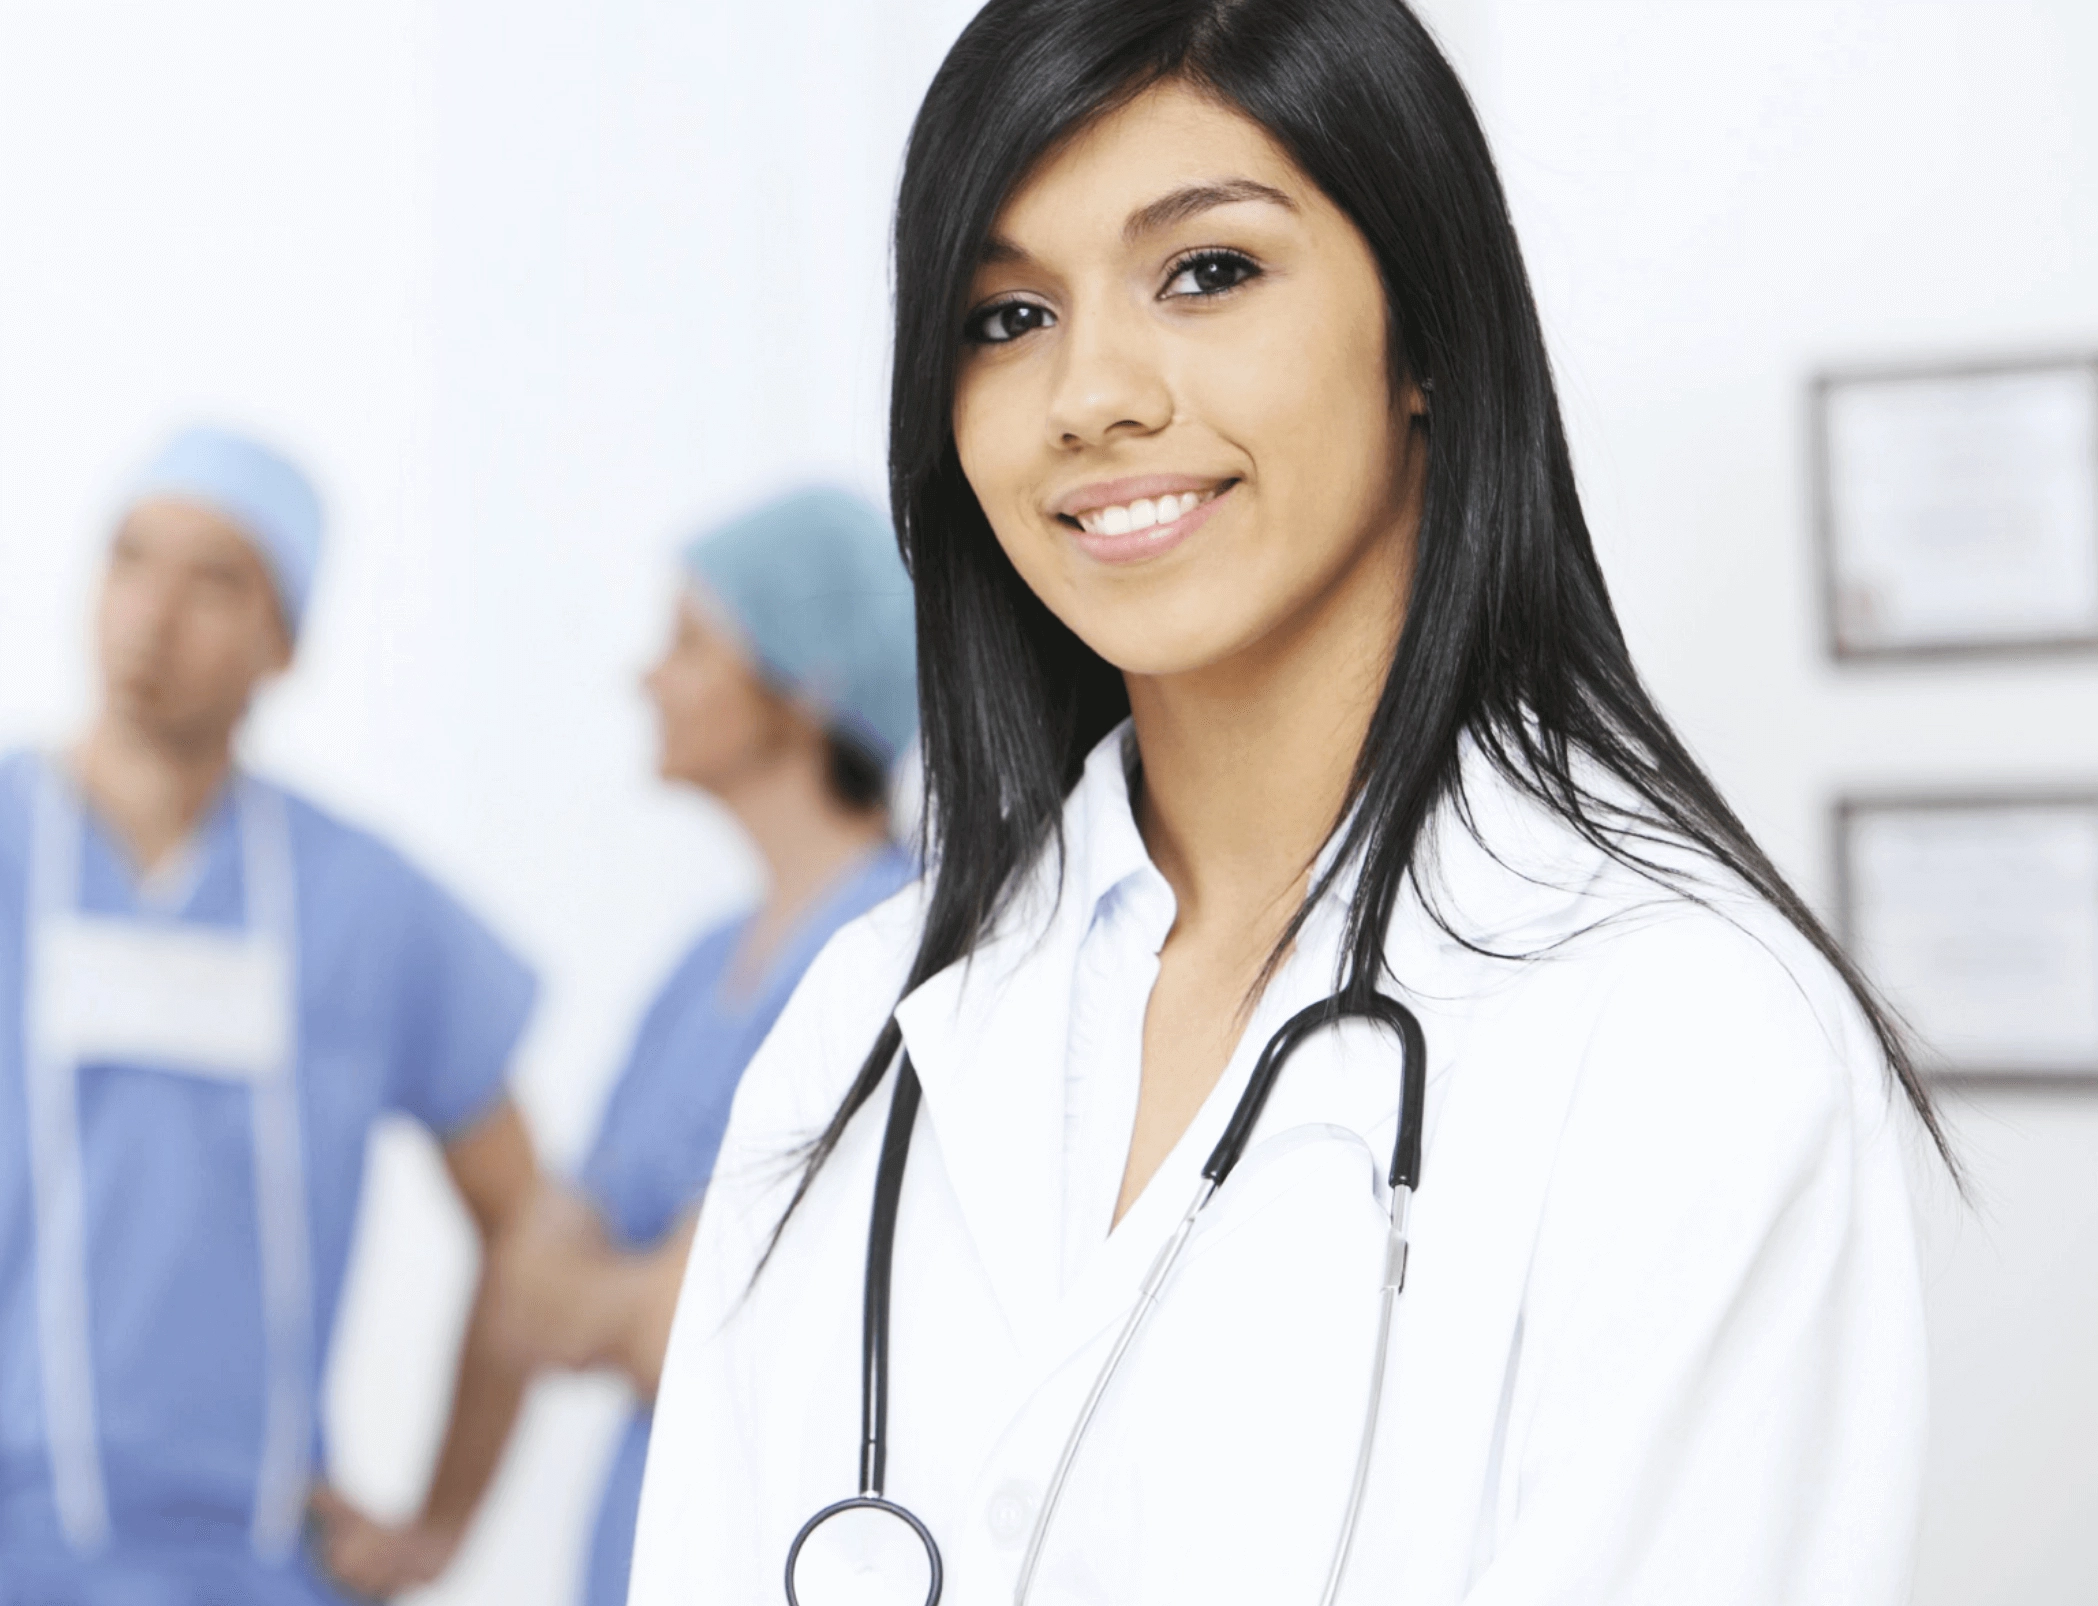 concierge courses for nurses, EKG interpretation, PCCN certification